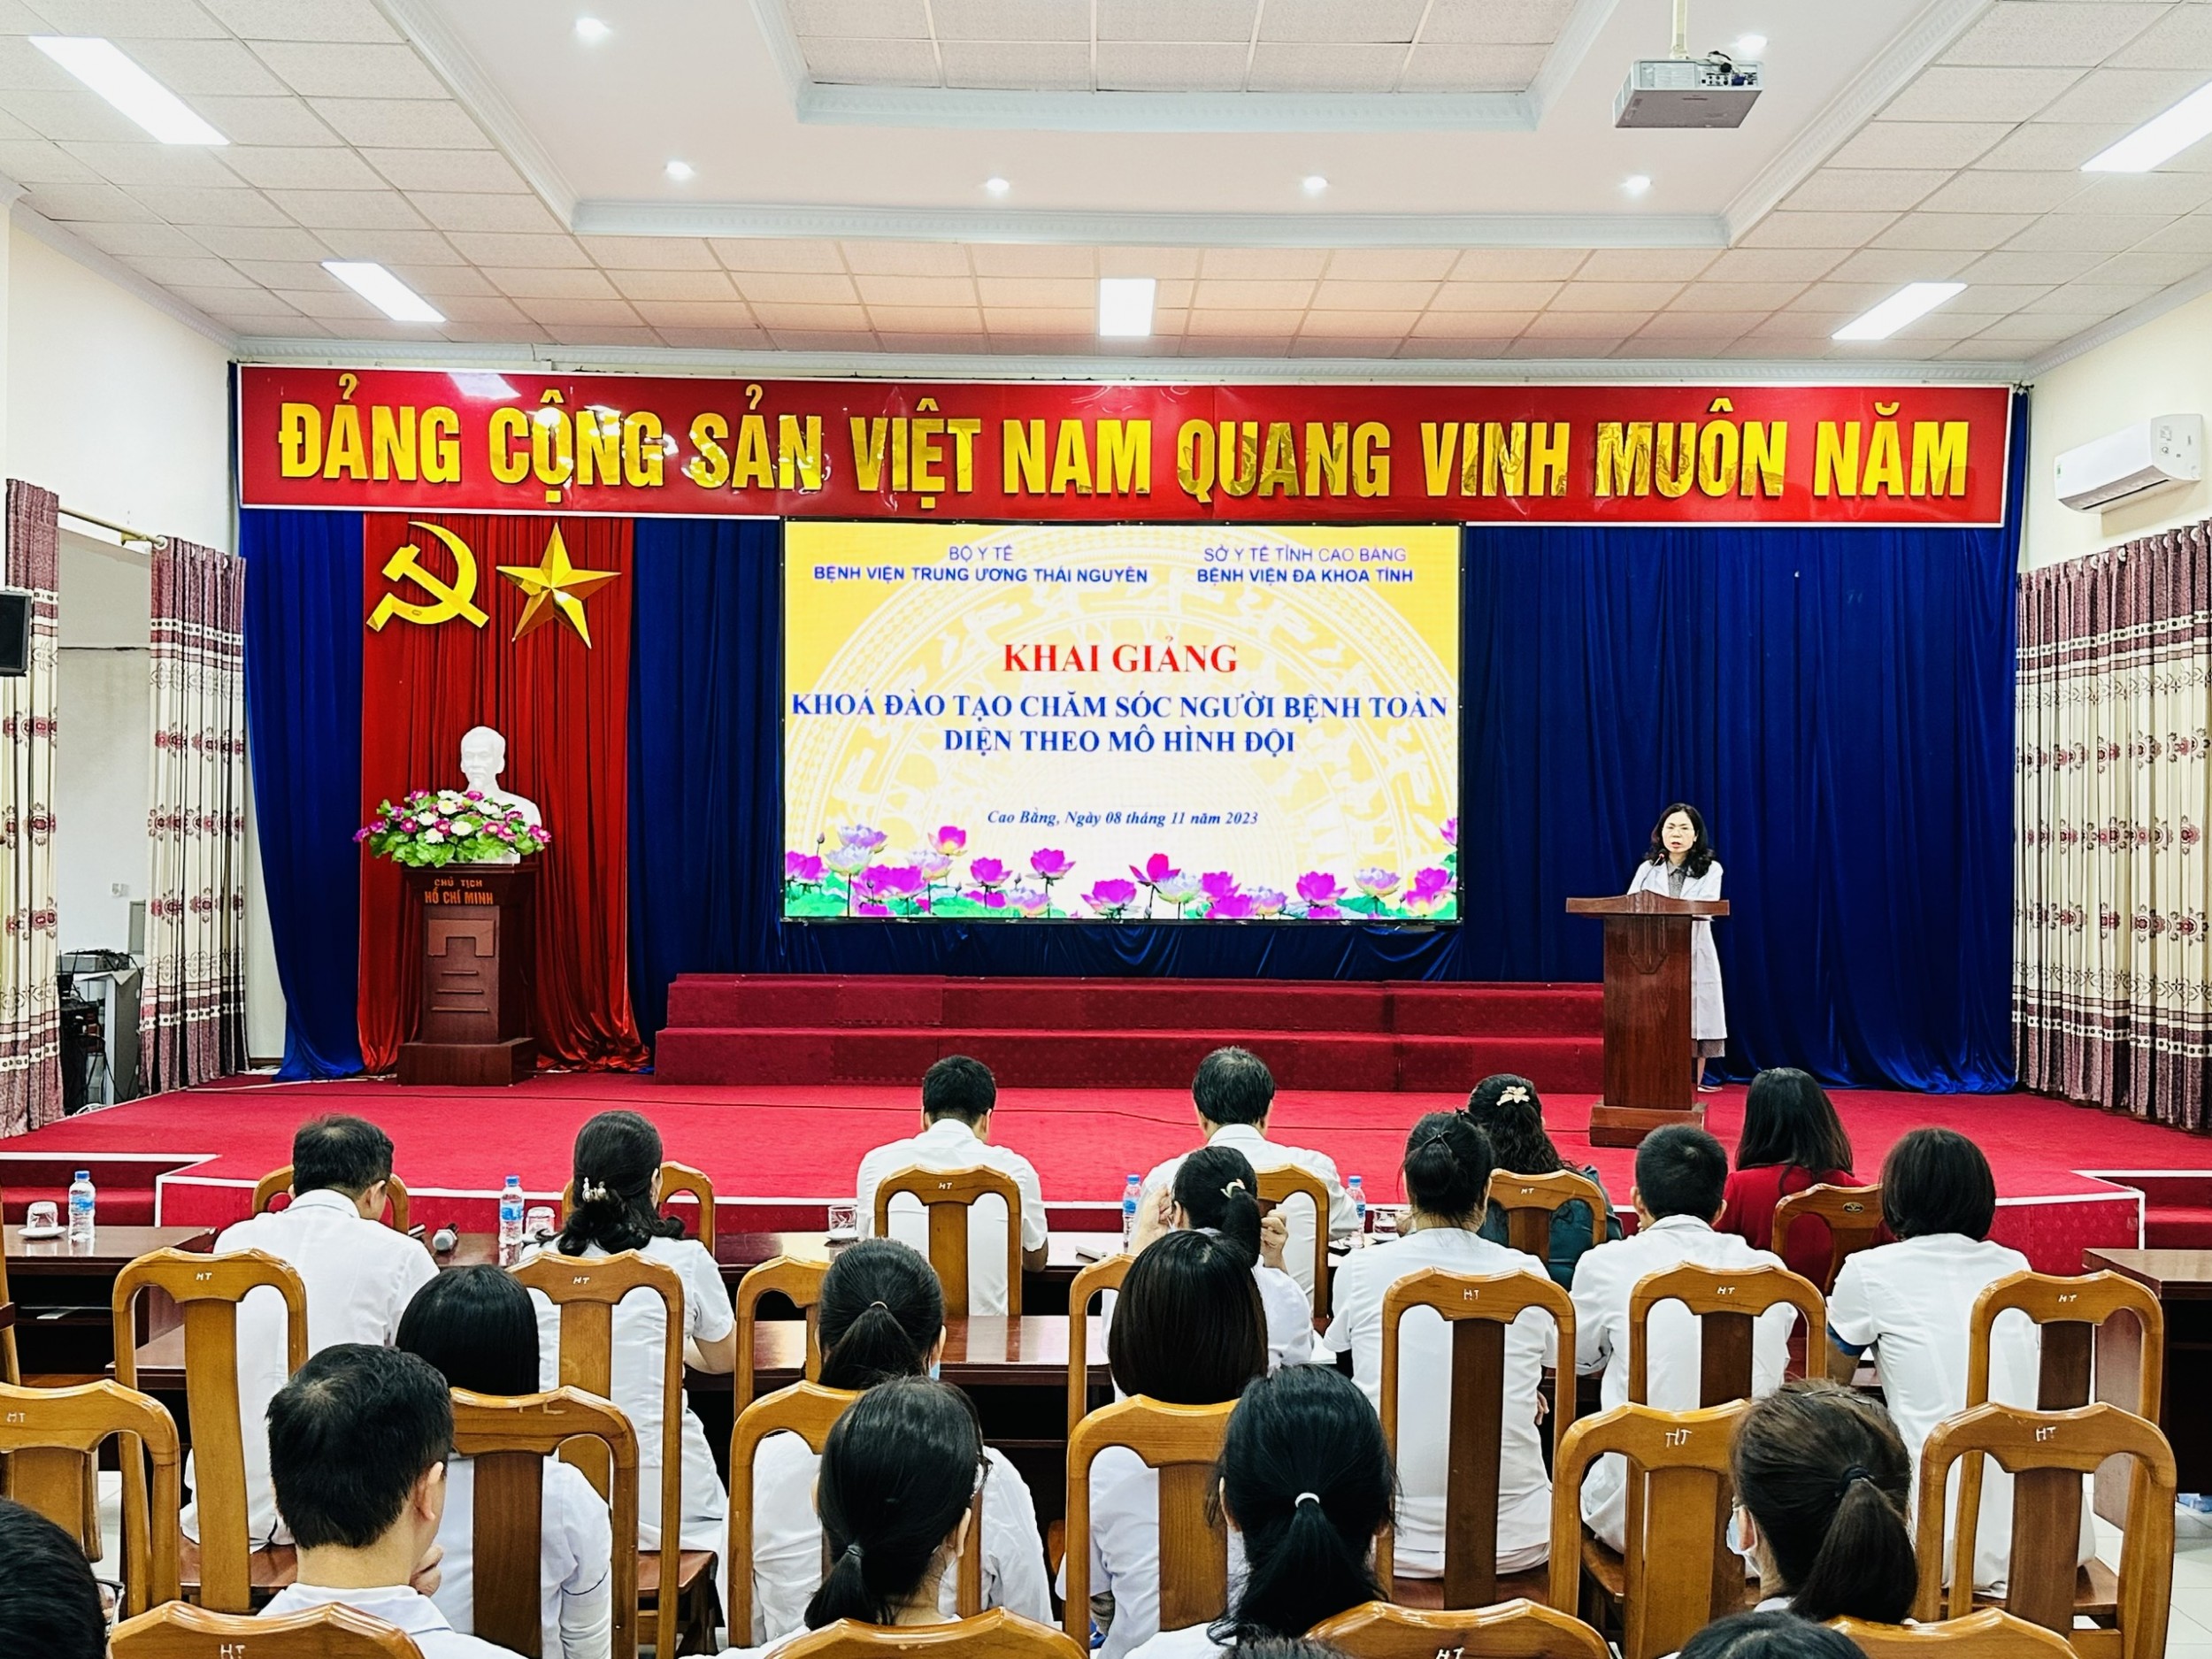 BSCKII. Lục Thị Hiệp, Phó Giám đốc Bệnh viện phát biểu khai mạc khai giảng Khóa Đào tạo.